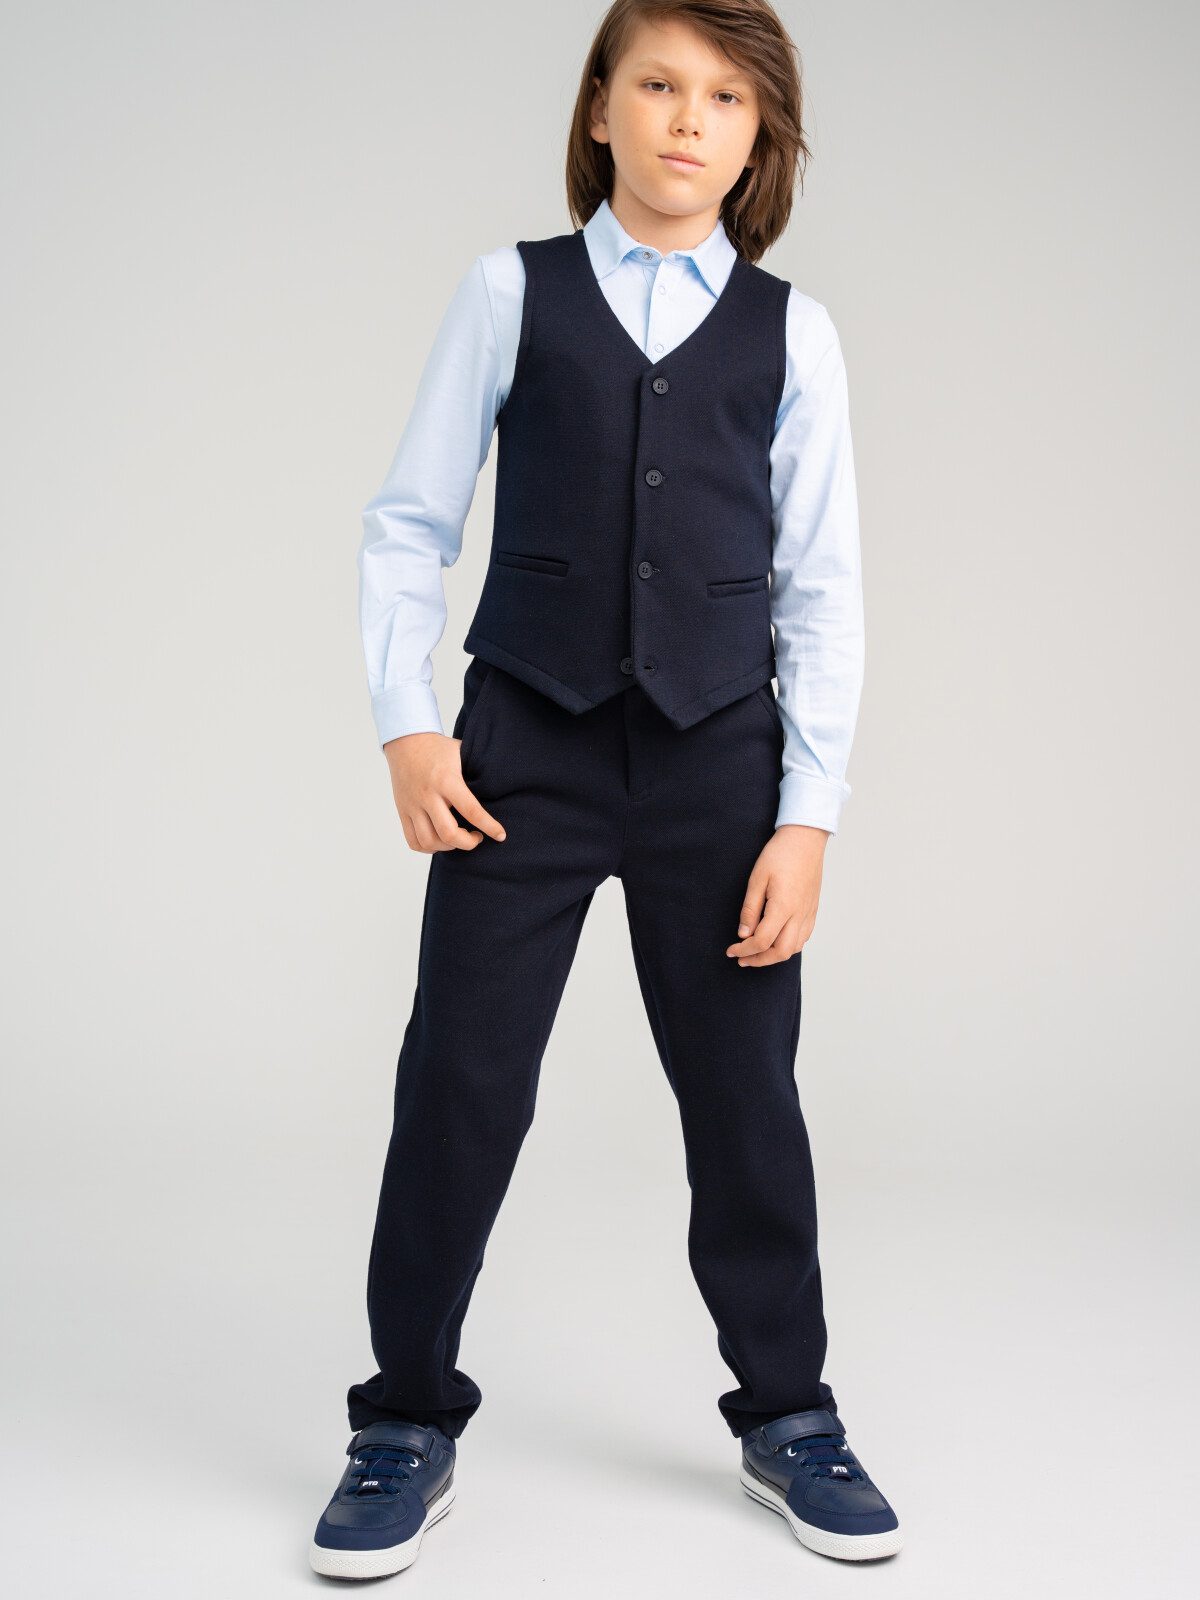 Комплект трикотажный для мальчика: жилет и брюки